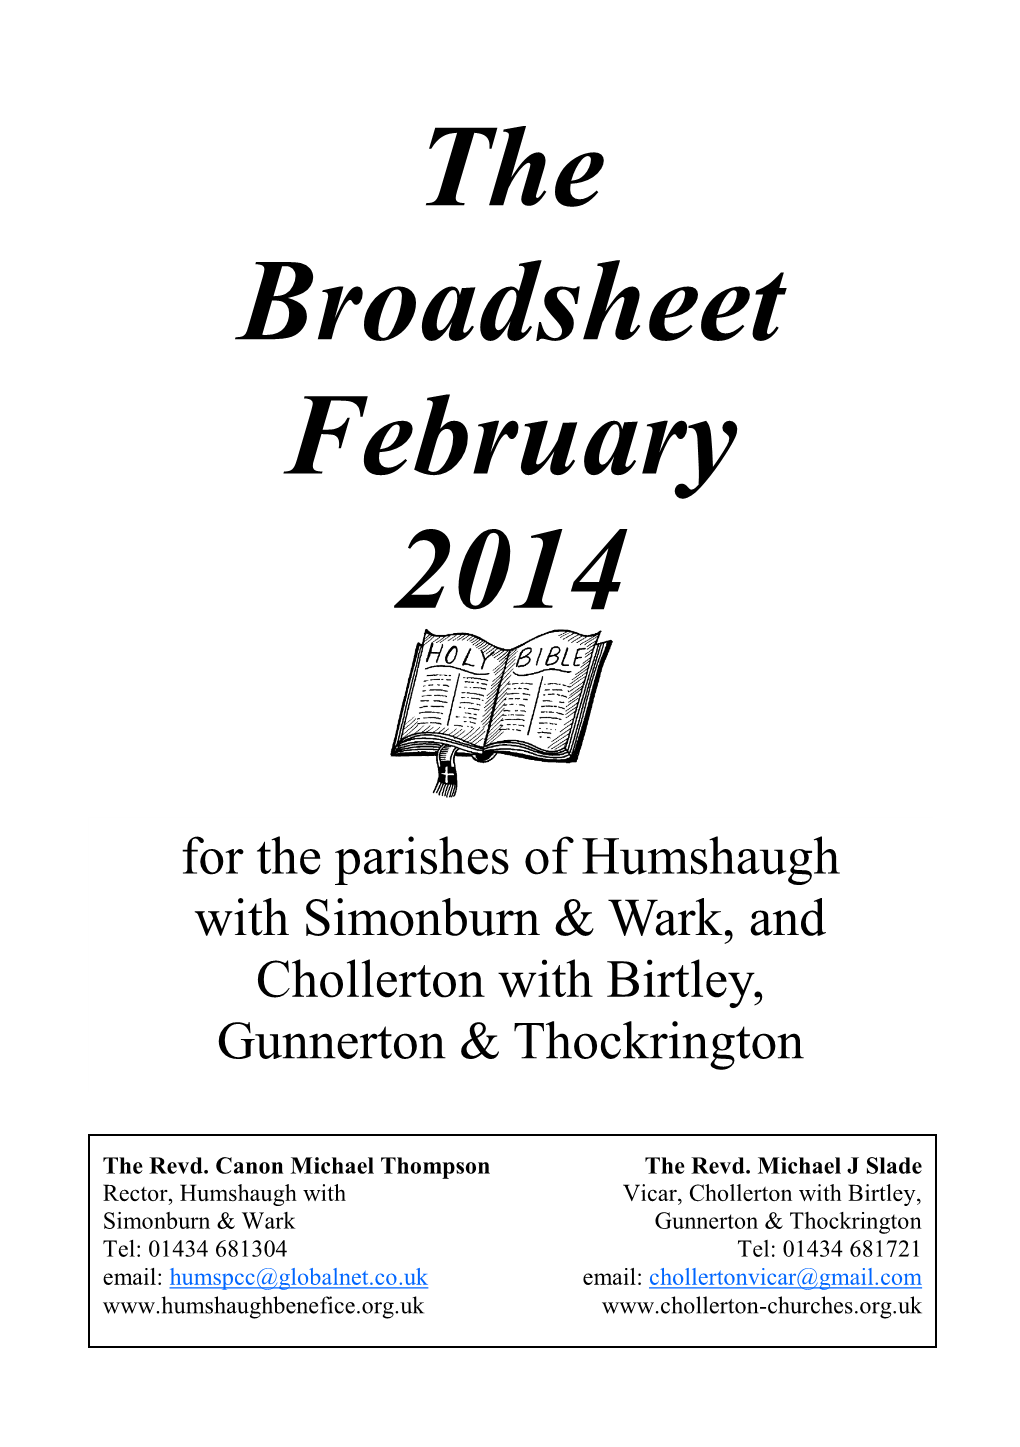 The Broadsheet February 2014